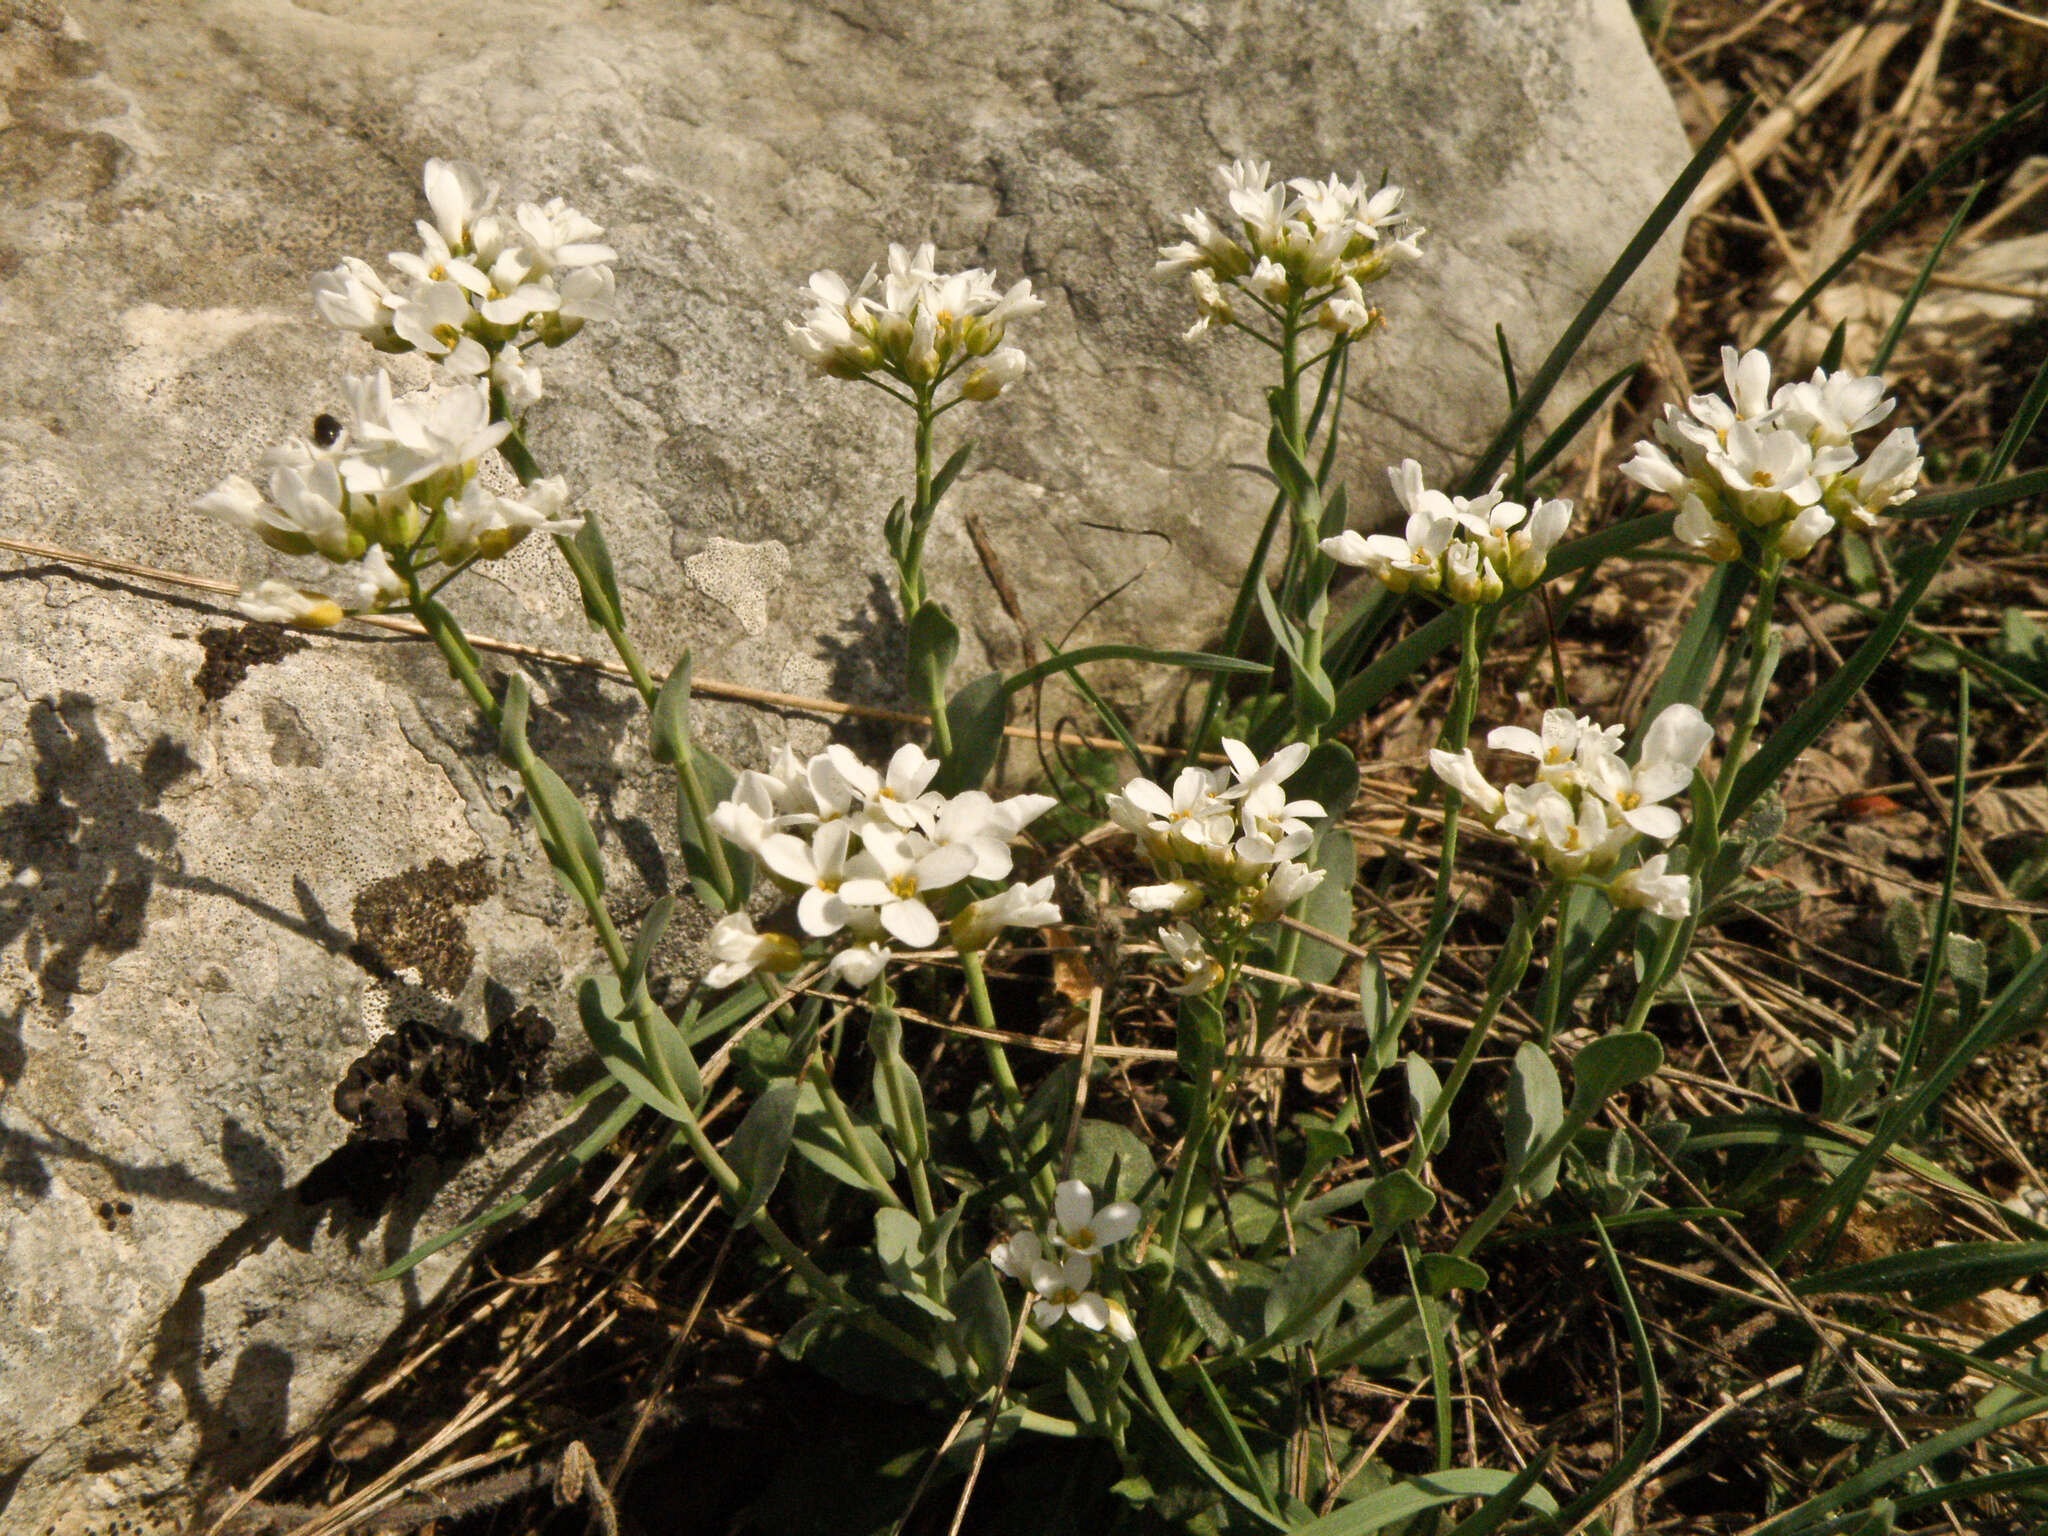 Image of Noccaea macrantha (Lipsky) F. K. Mey.